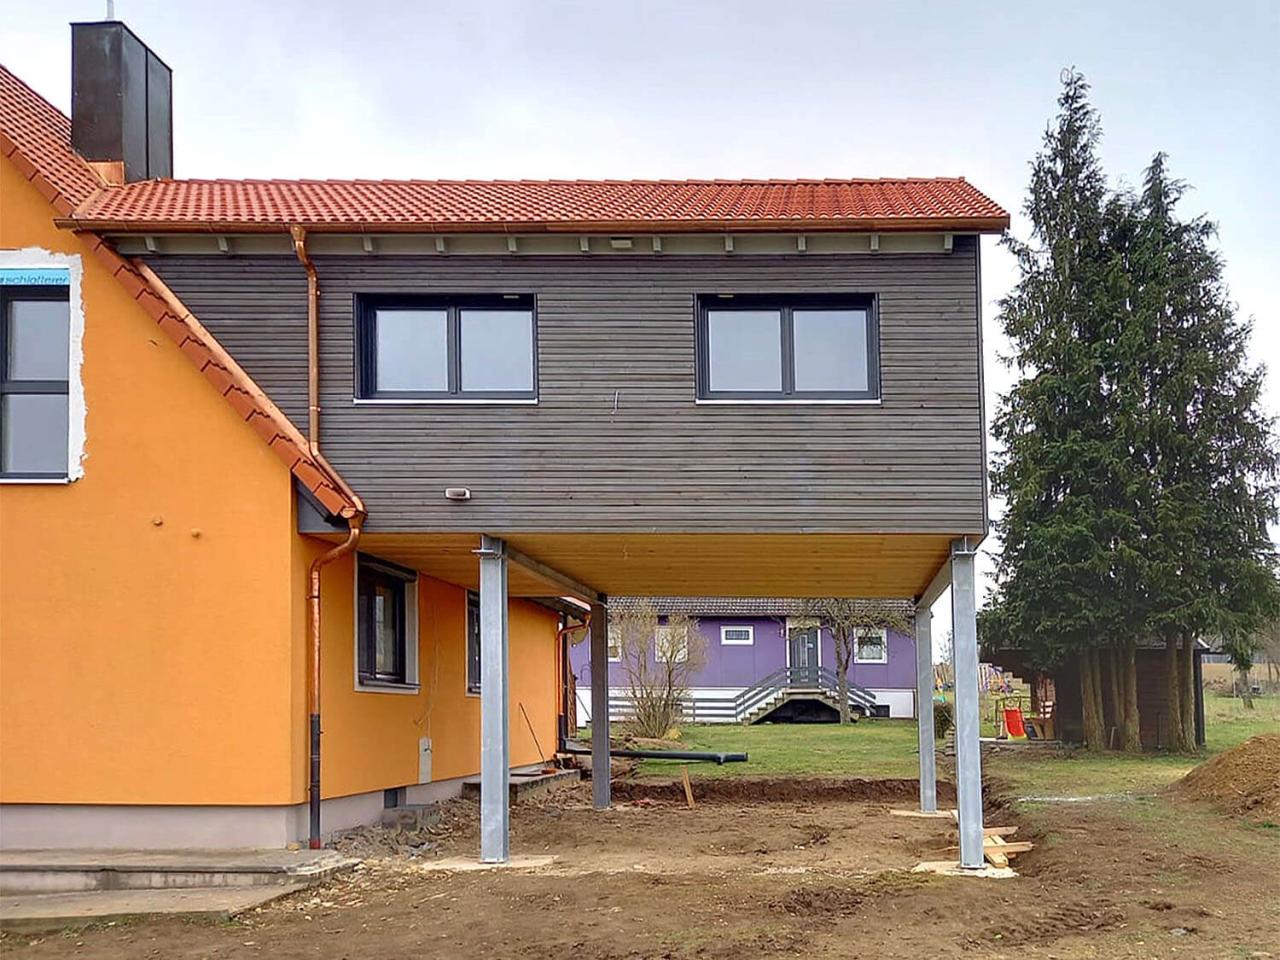 Anbau an ein bestehendes Einfamilienhaus in AdelshofenGroßharbach